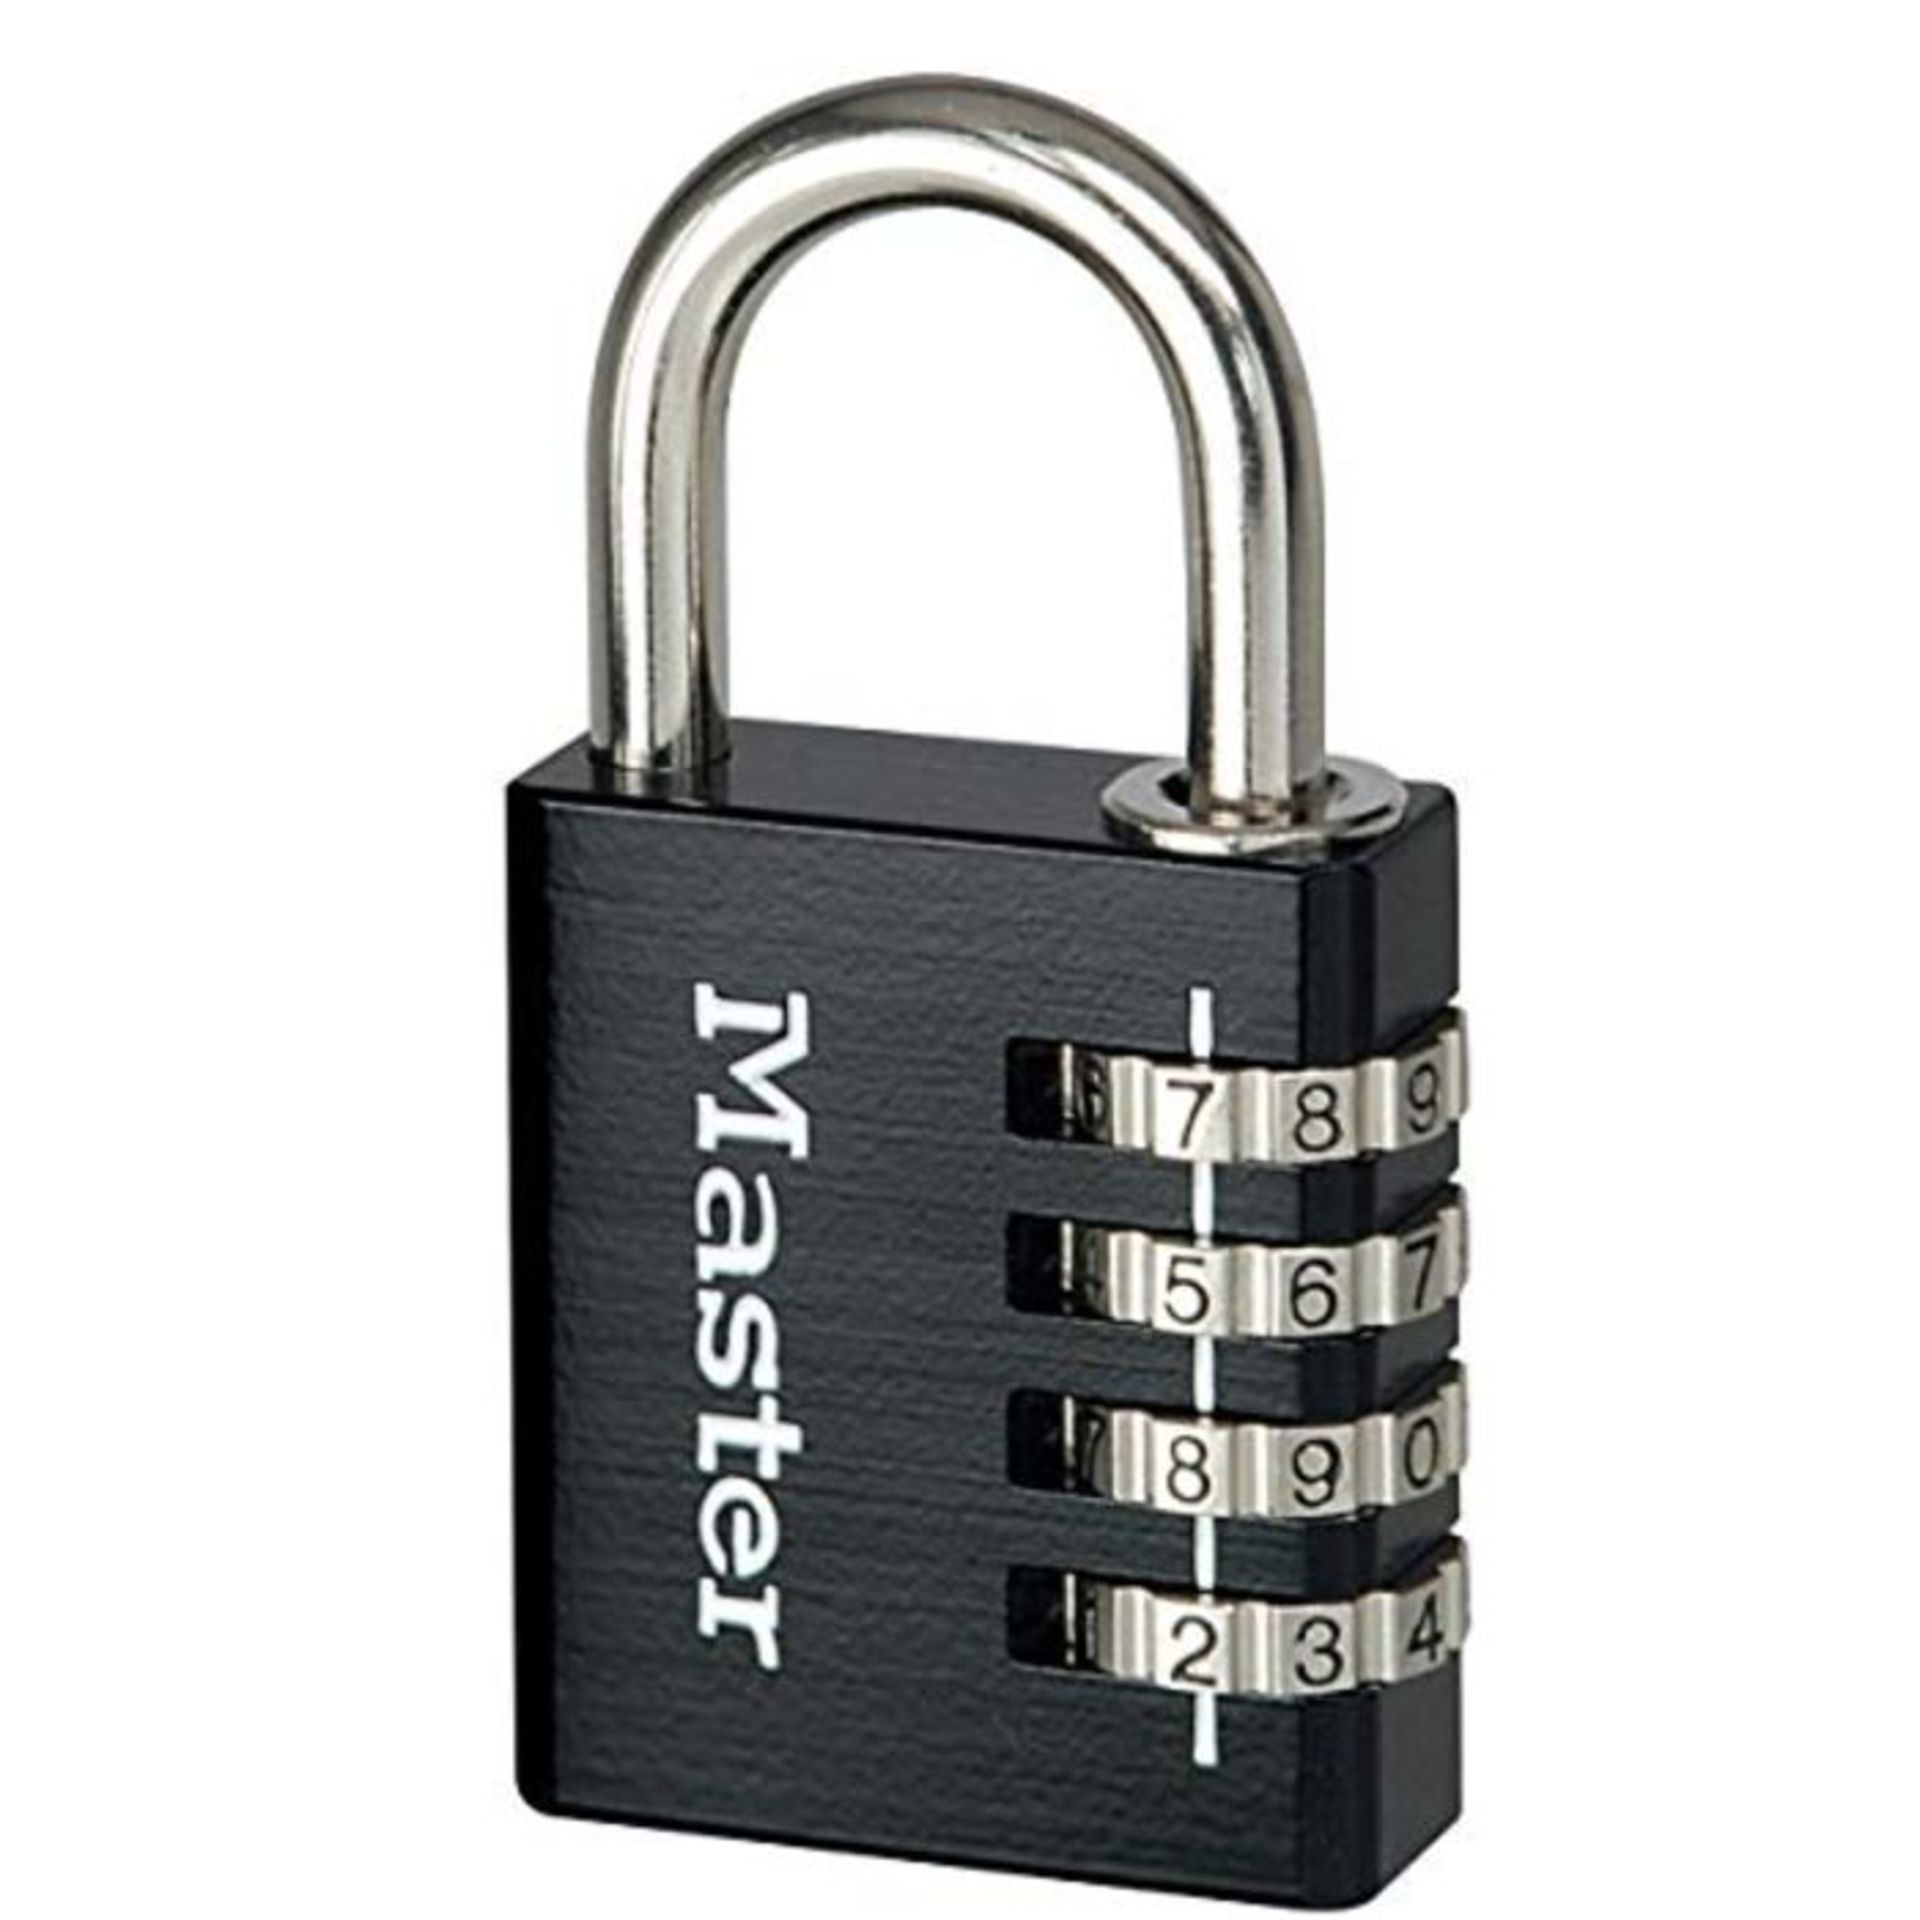 [CRACKED] Master Lock 7640EURDBLKCC Combination Padlock in Aluminium, Black, 4 x 7.8 x